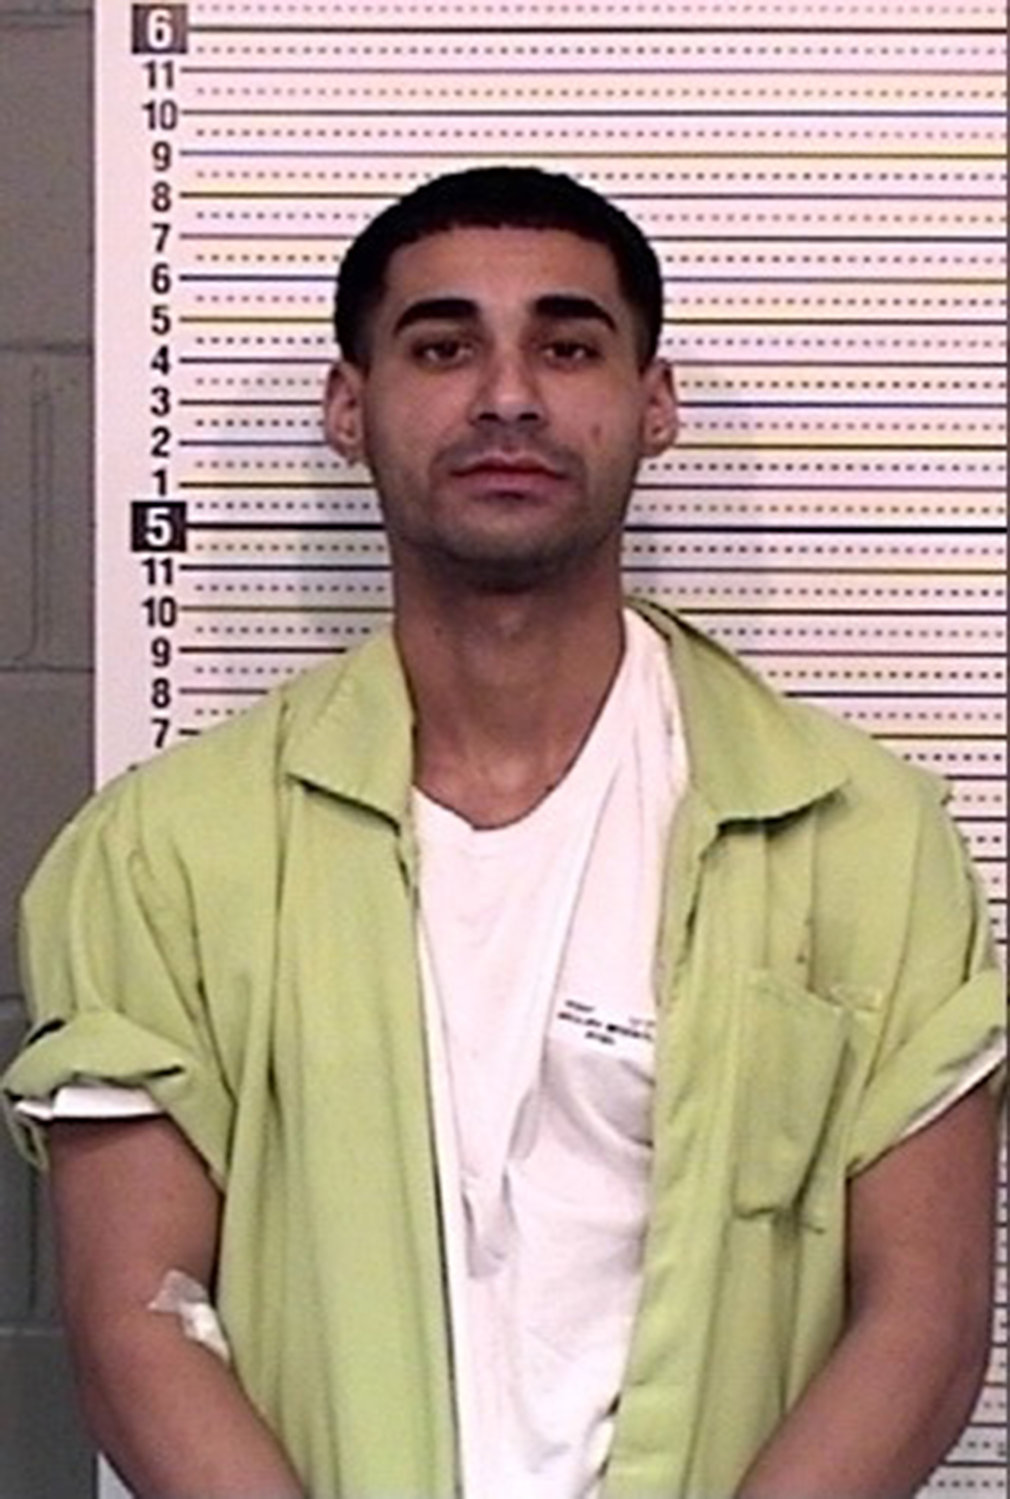 Rogel Aguilera-Mederos. (Colorado Department of Corrections/TNS)